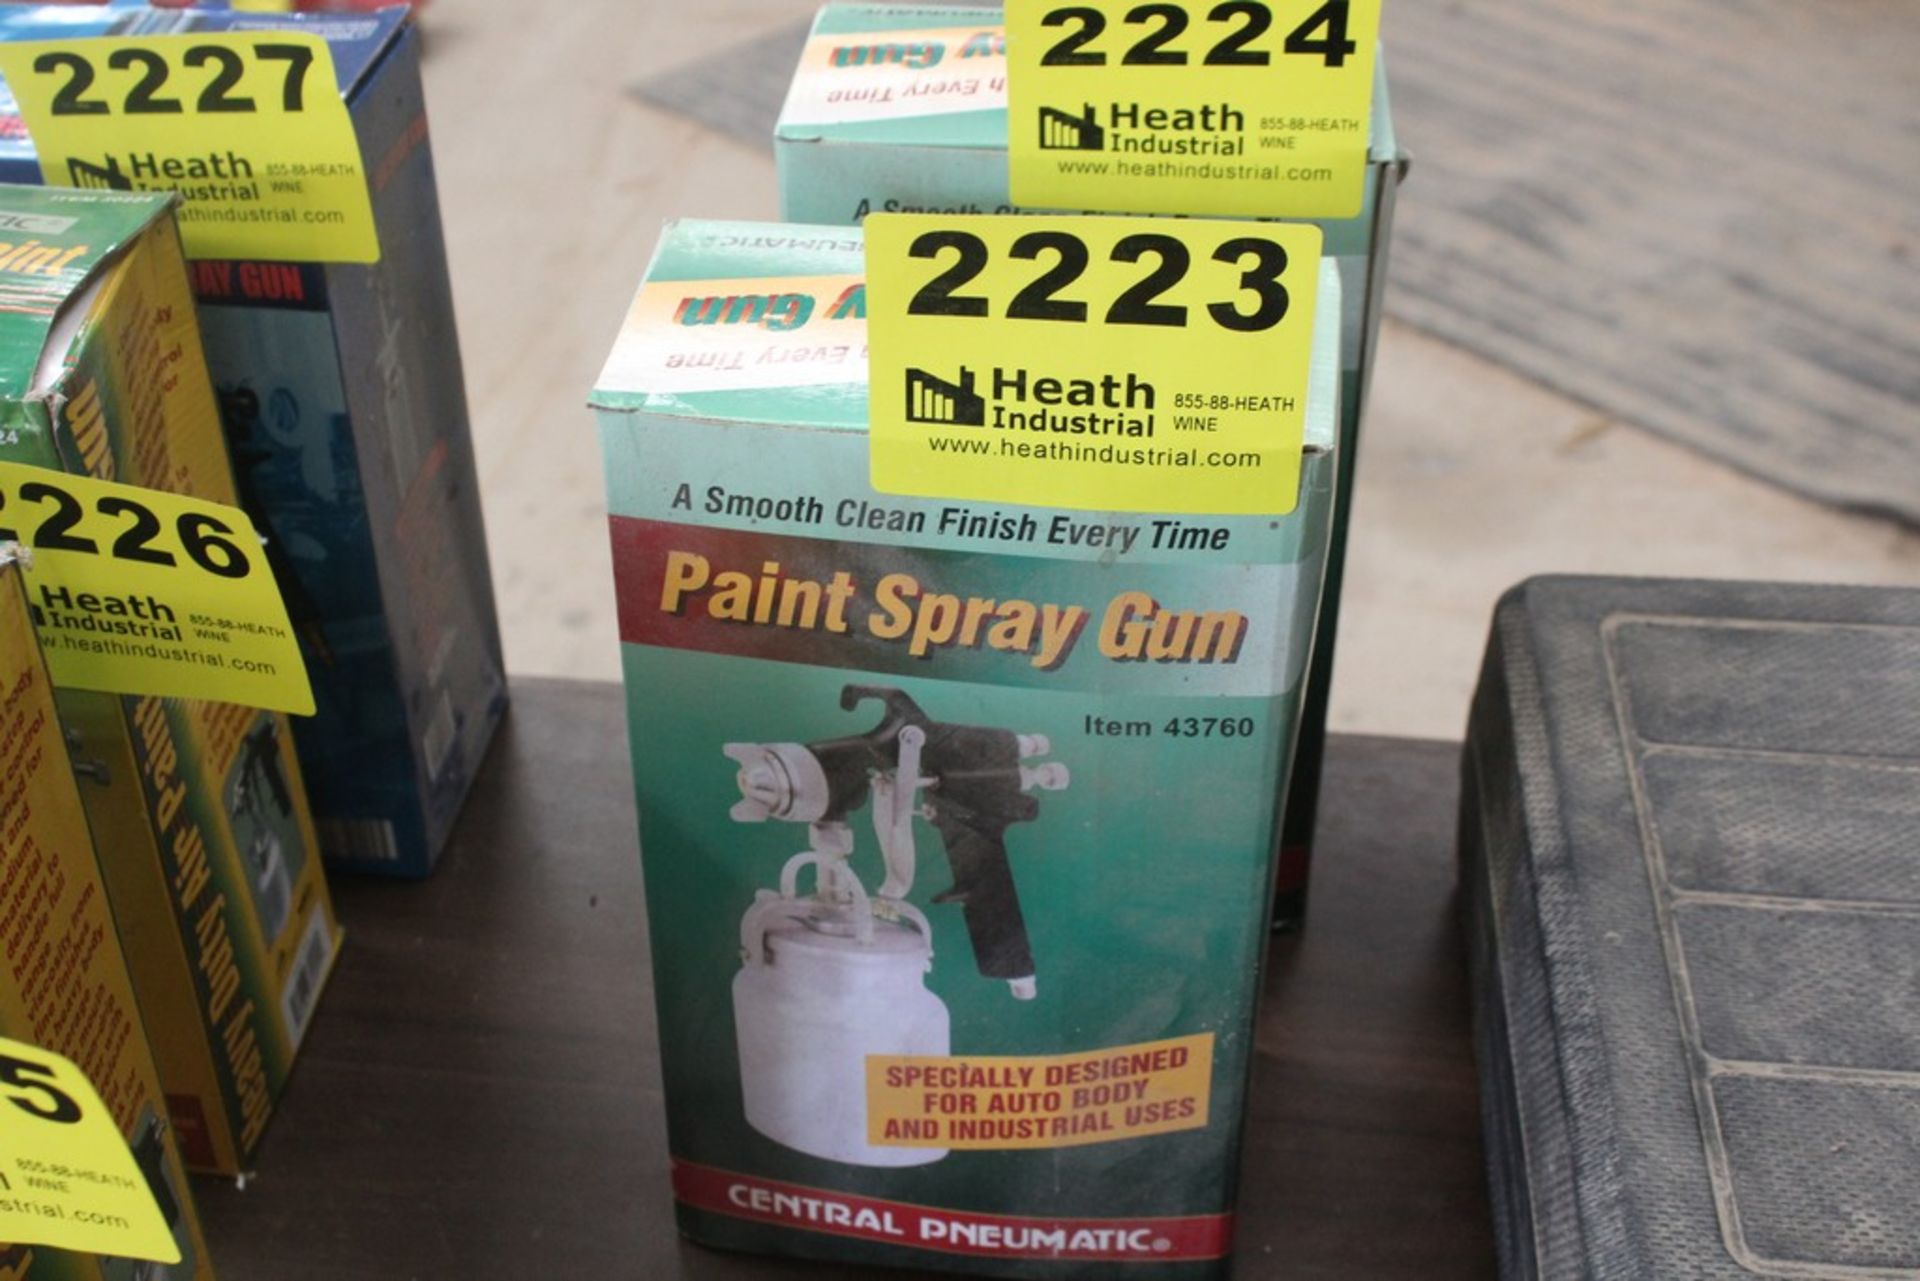 CENTRAL PNEUMATIC MODEL 43760 PAINT SPRAYER GUN